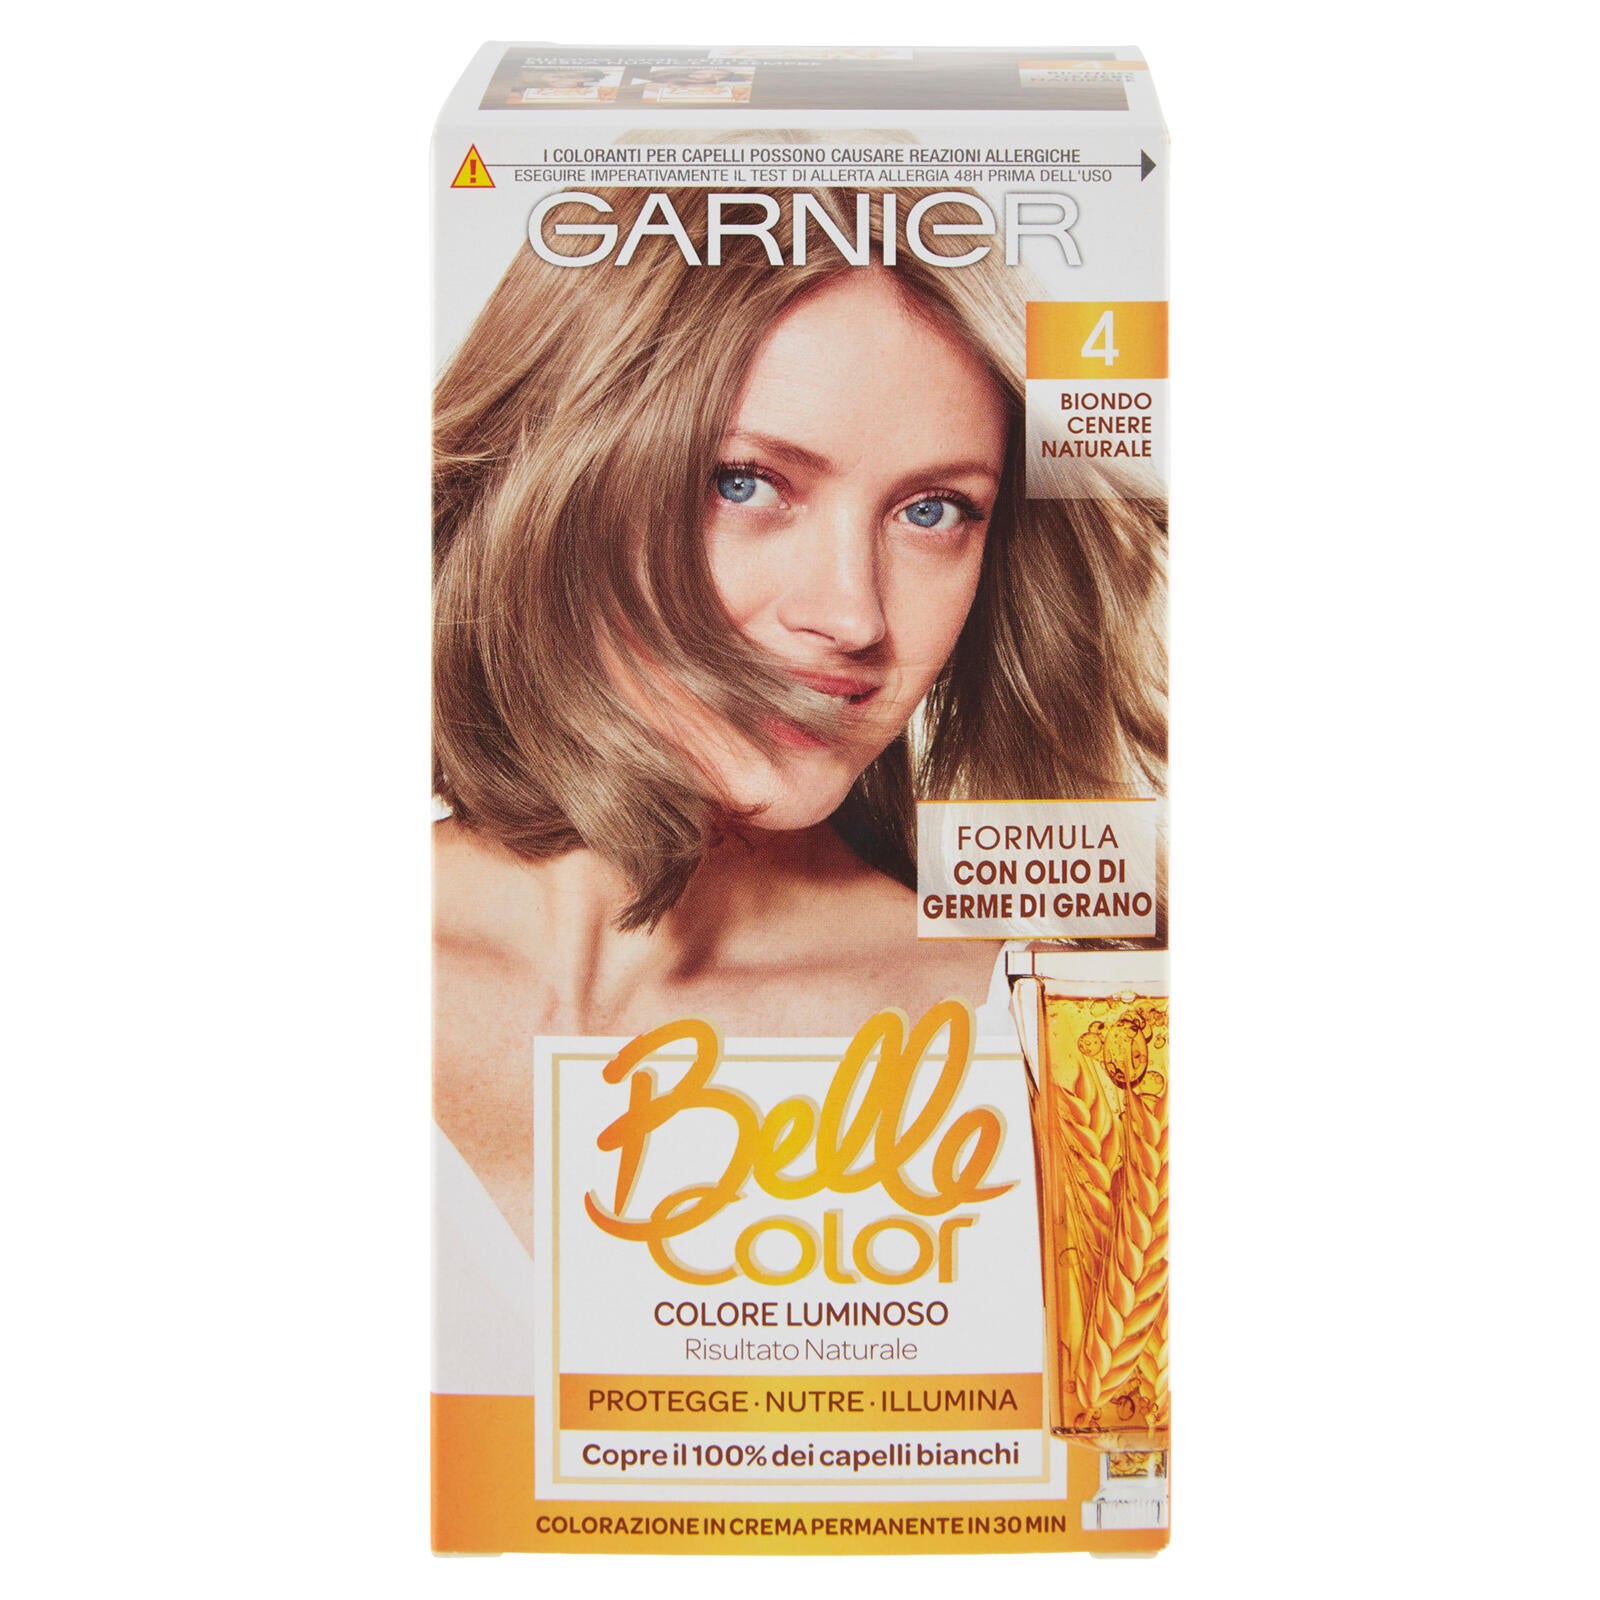 Garnier Belle Color Colore Luminoso, Tinta per Capelli Bianchi 4 Biondo Cenere Naturale